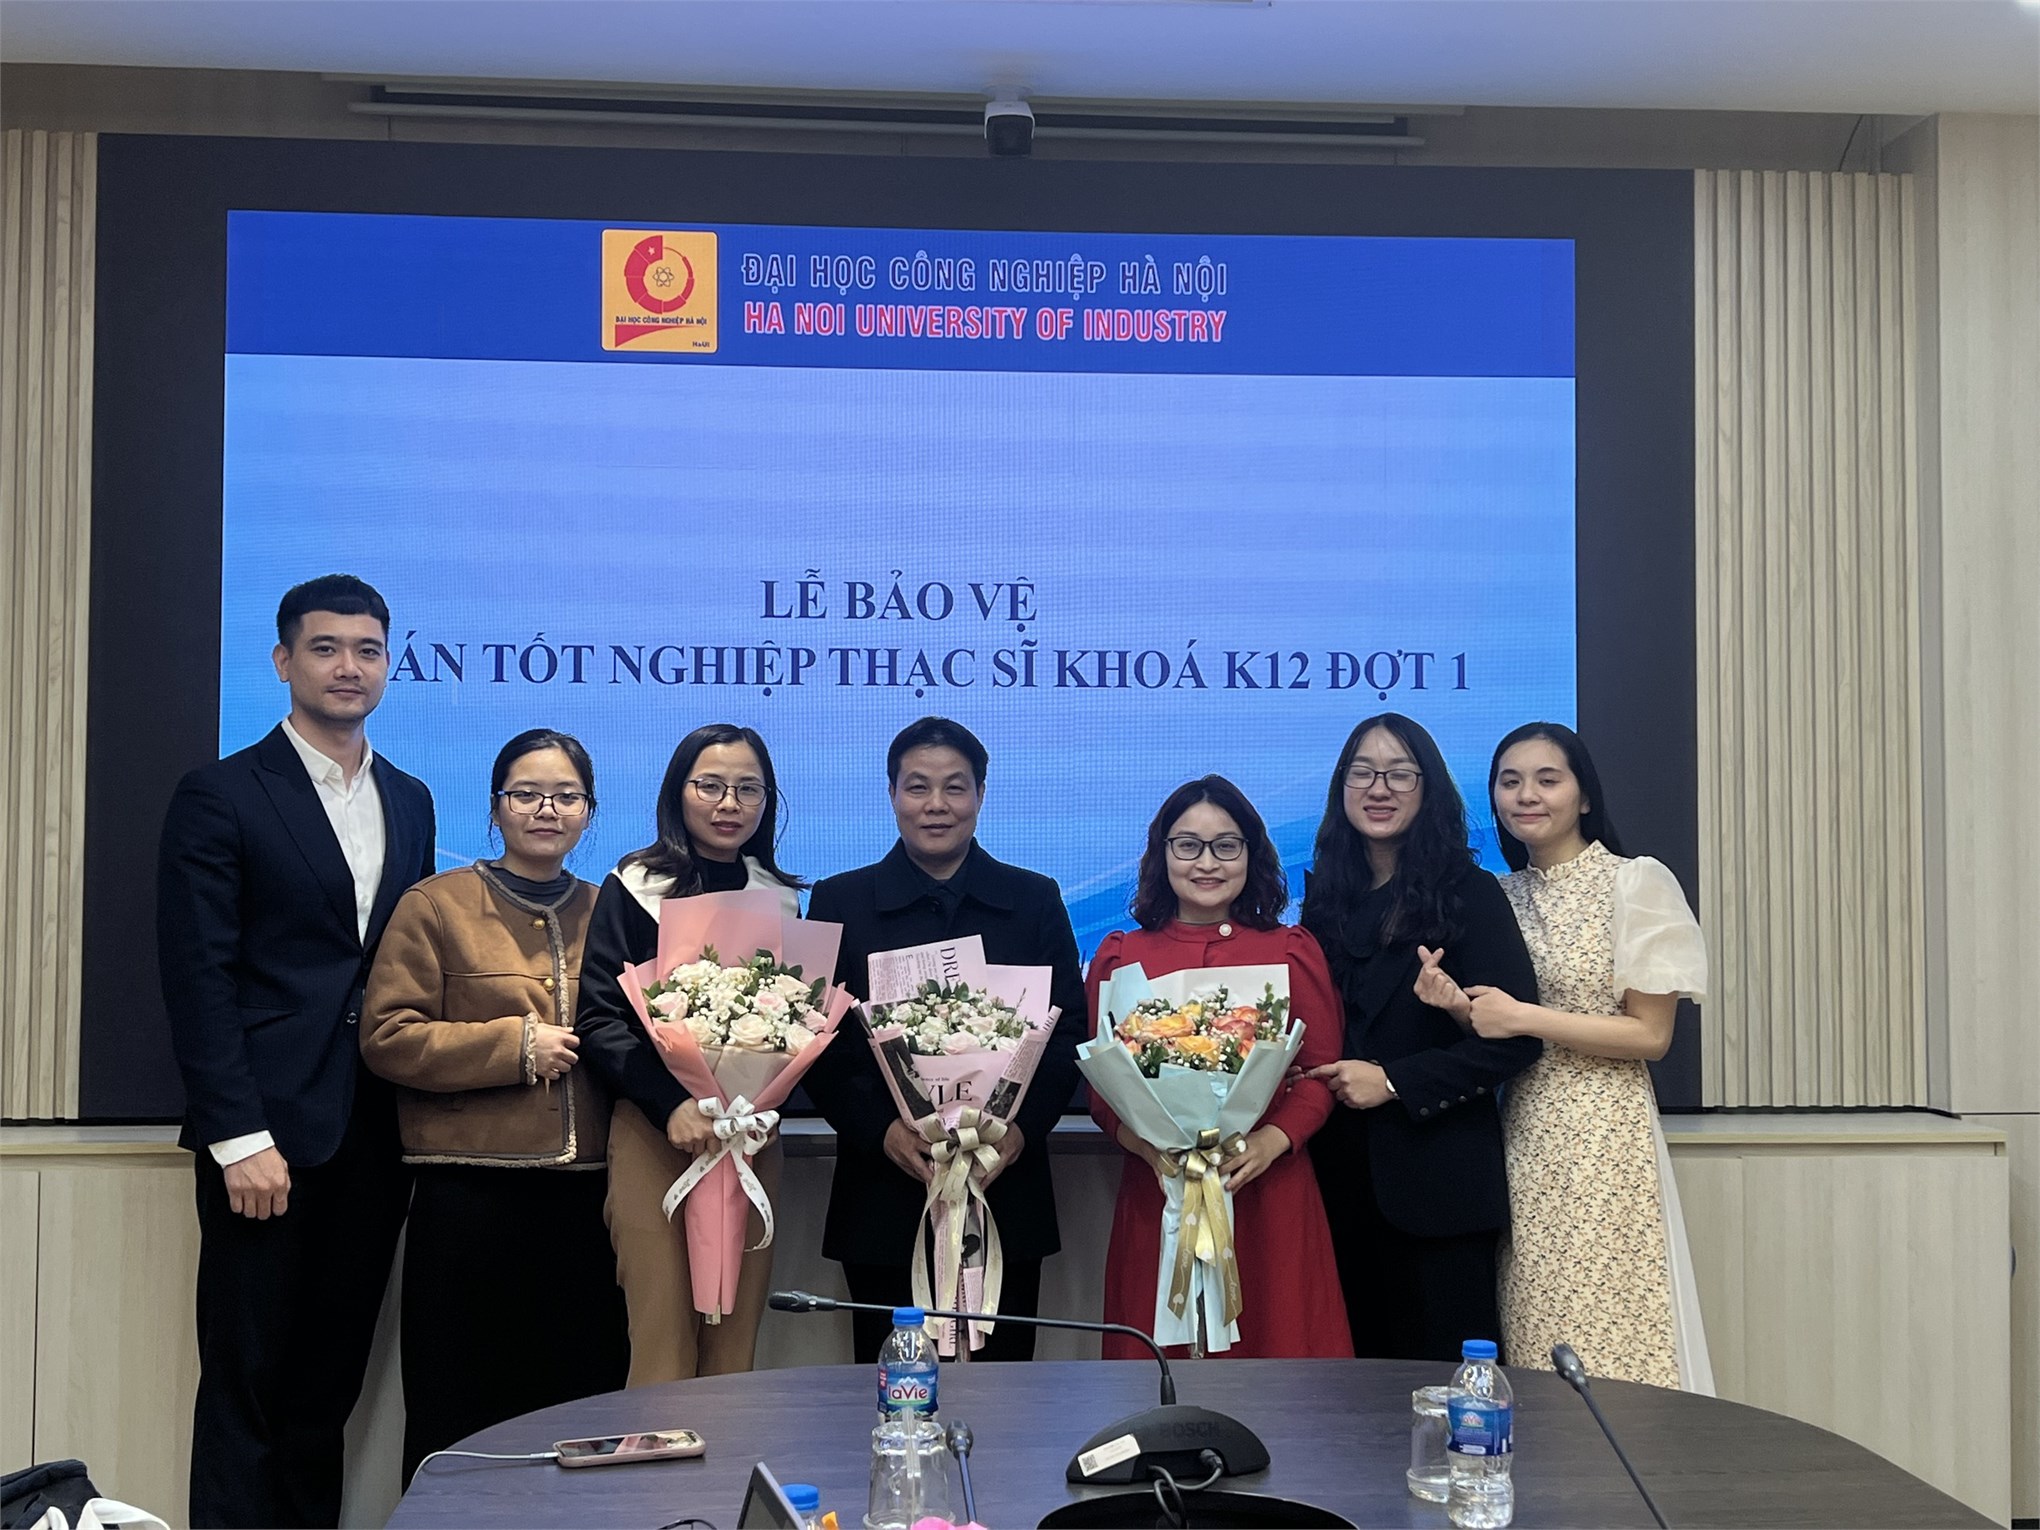 Trường Đại học Công nghiệp Hà Nội, tổ chức bảo vệ đề án tốt nghiệp thạc sĩ cho học viên cao học ngành Ngôn ngữ Trung Quốc – khóa 12 đợt 1 (niên khóa 2022-2024).